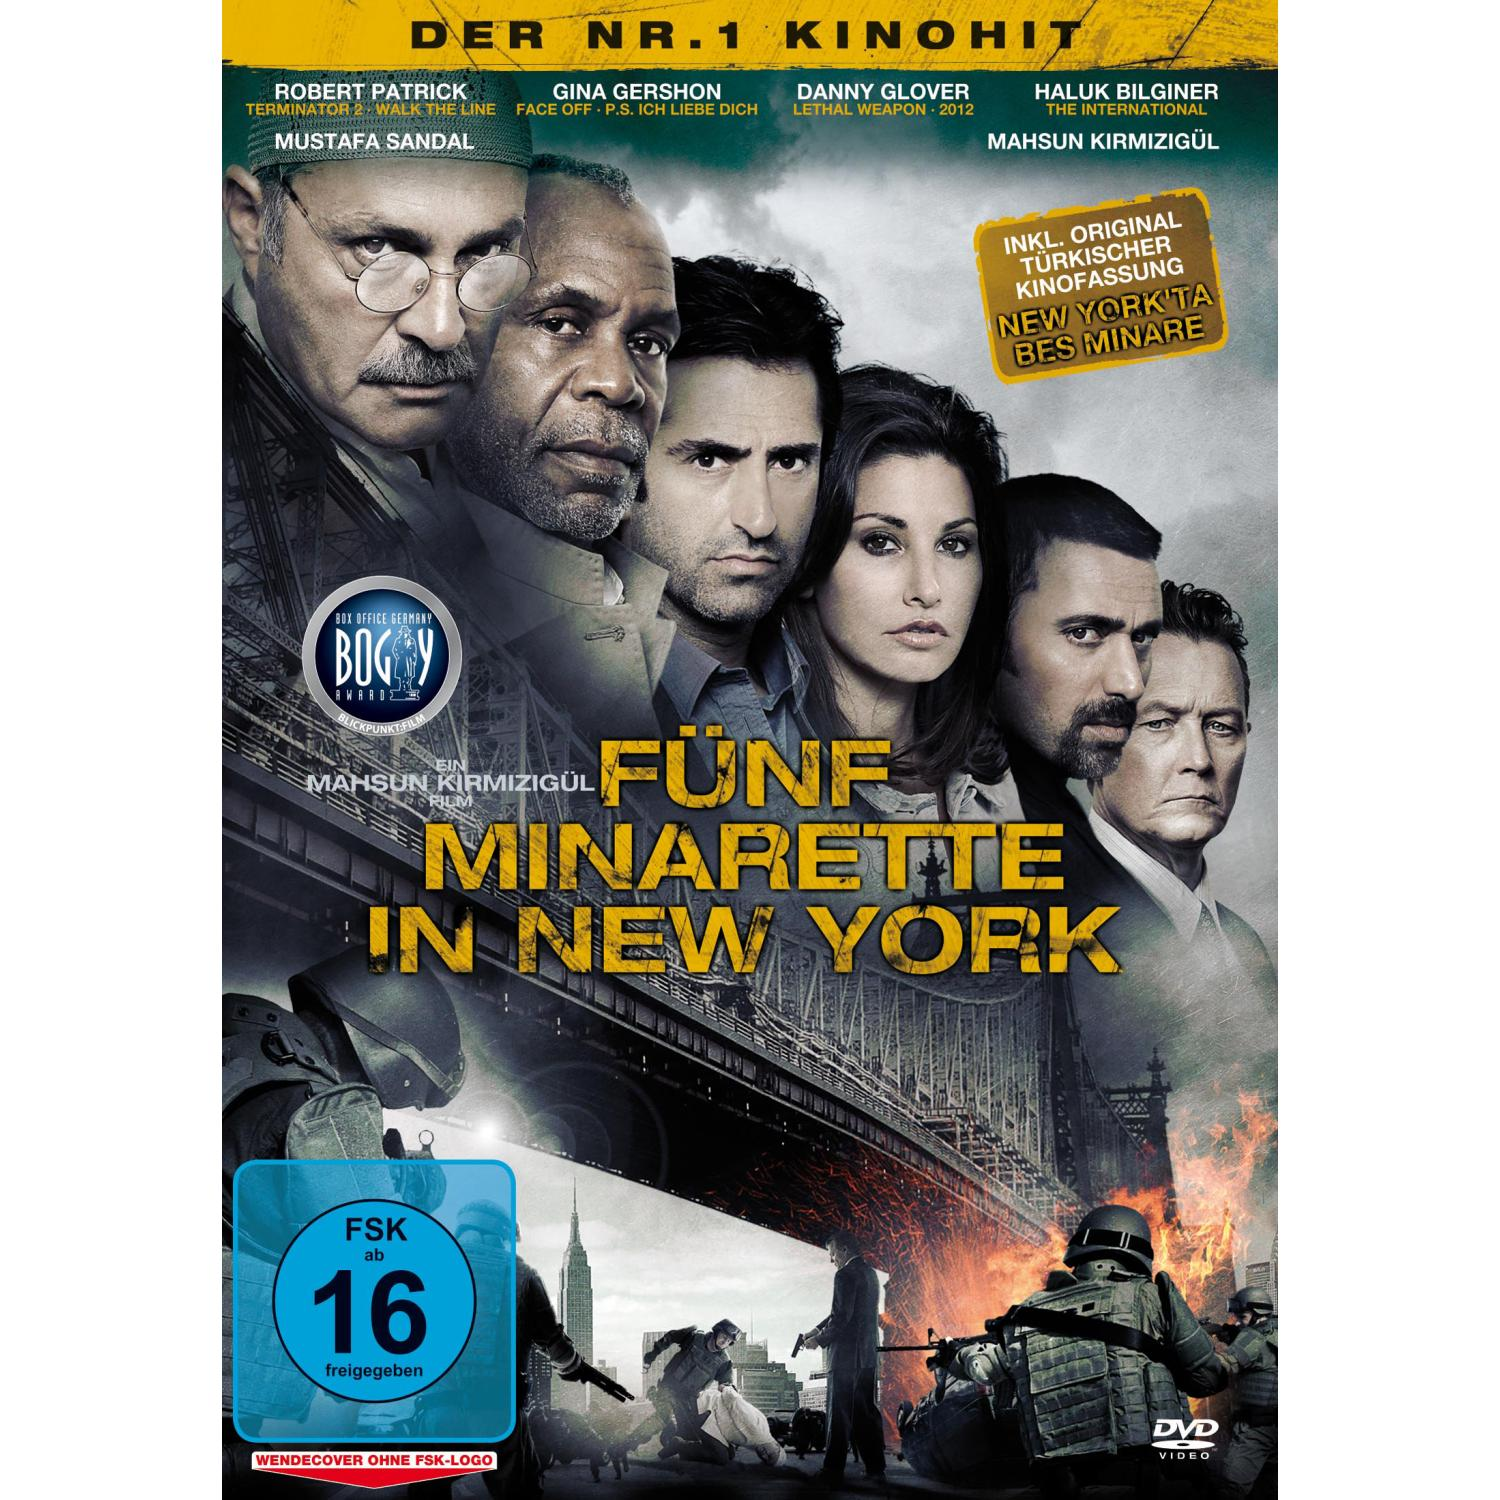 DVD IN (KINOFASSUNG) YORK NEW FÜNF MINARETTE